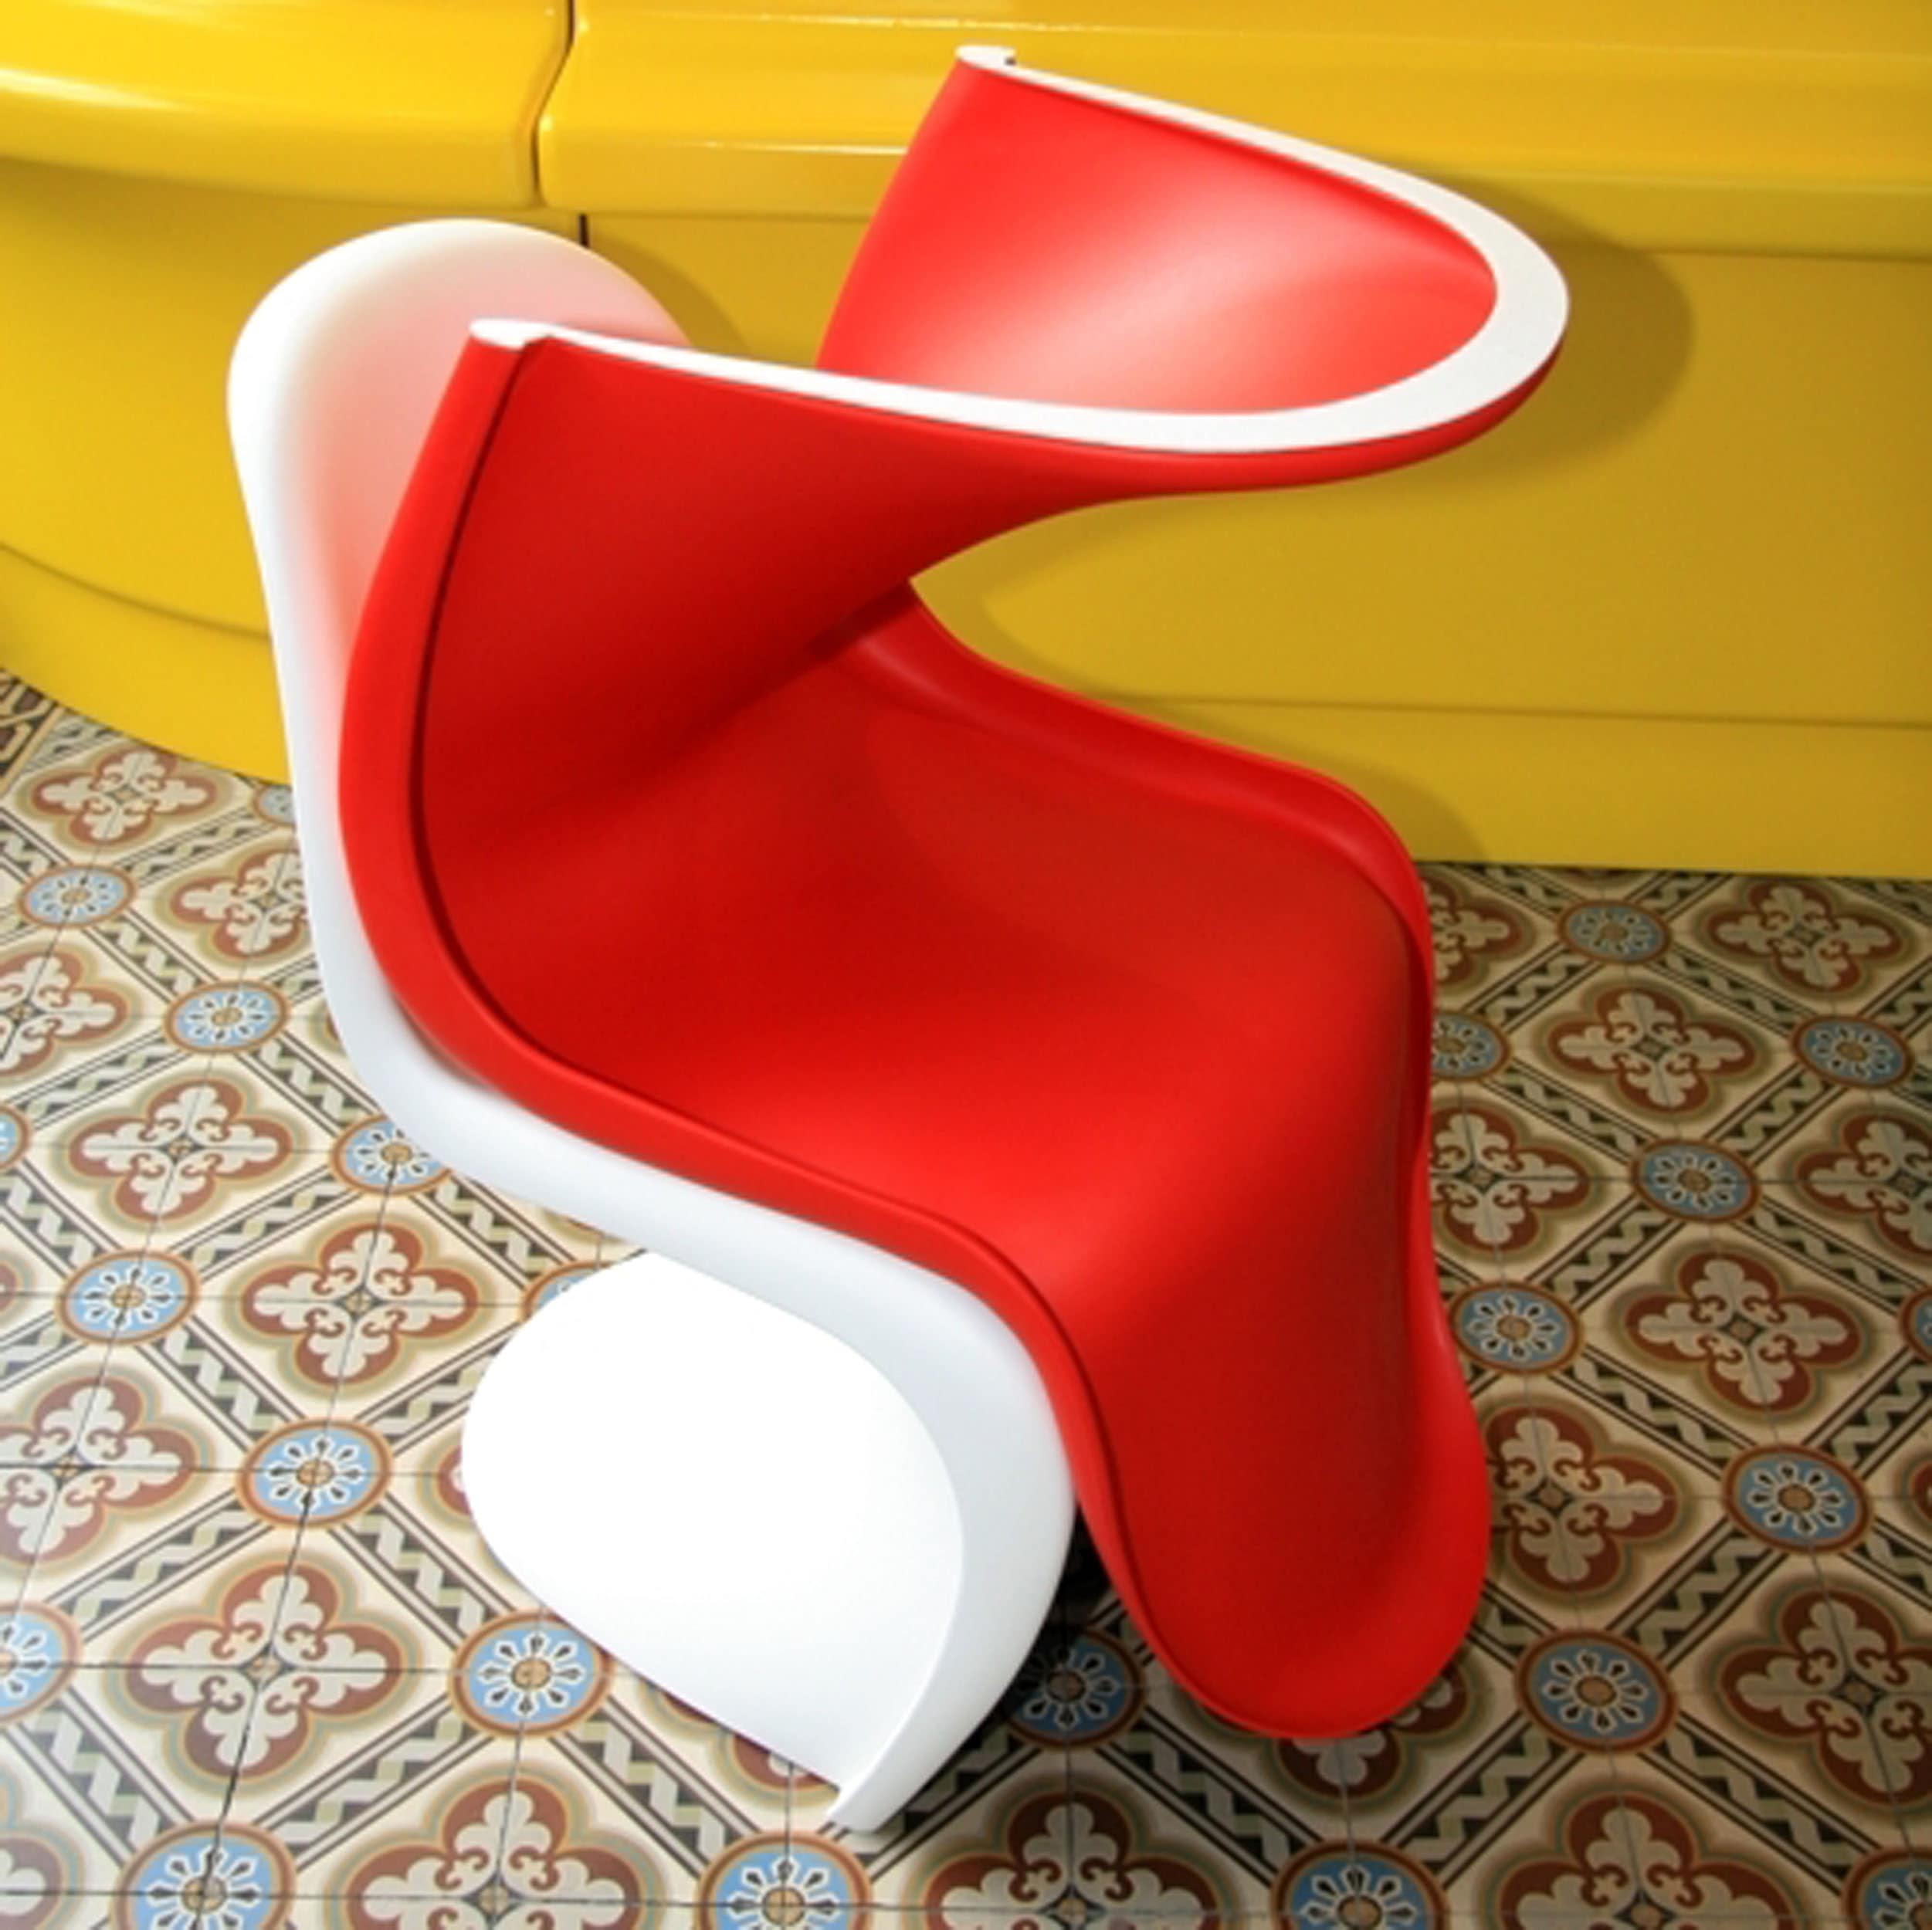 Panto Glide Filzgleiter für Panton Chair